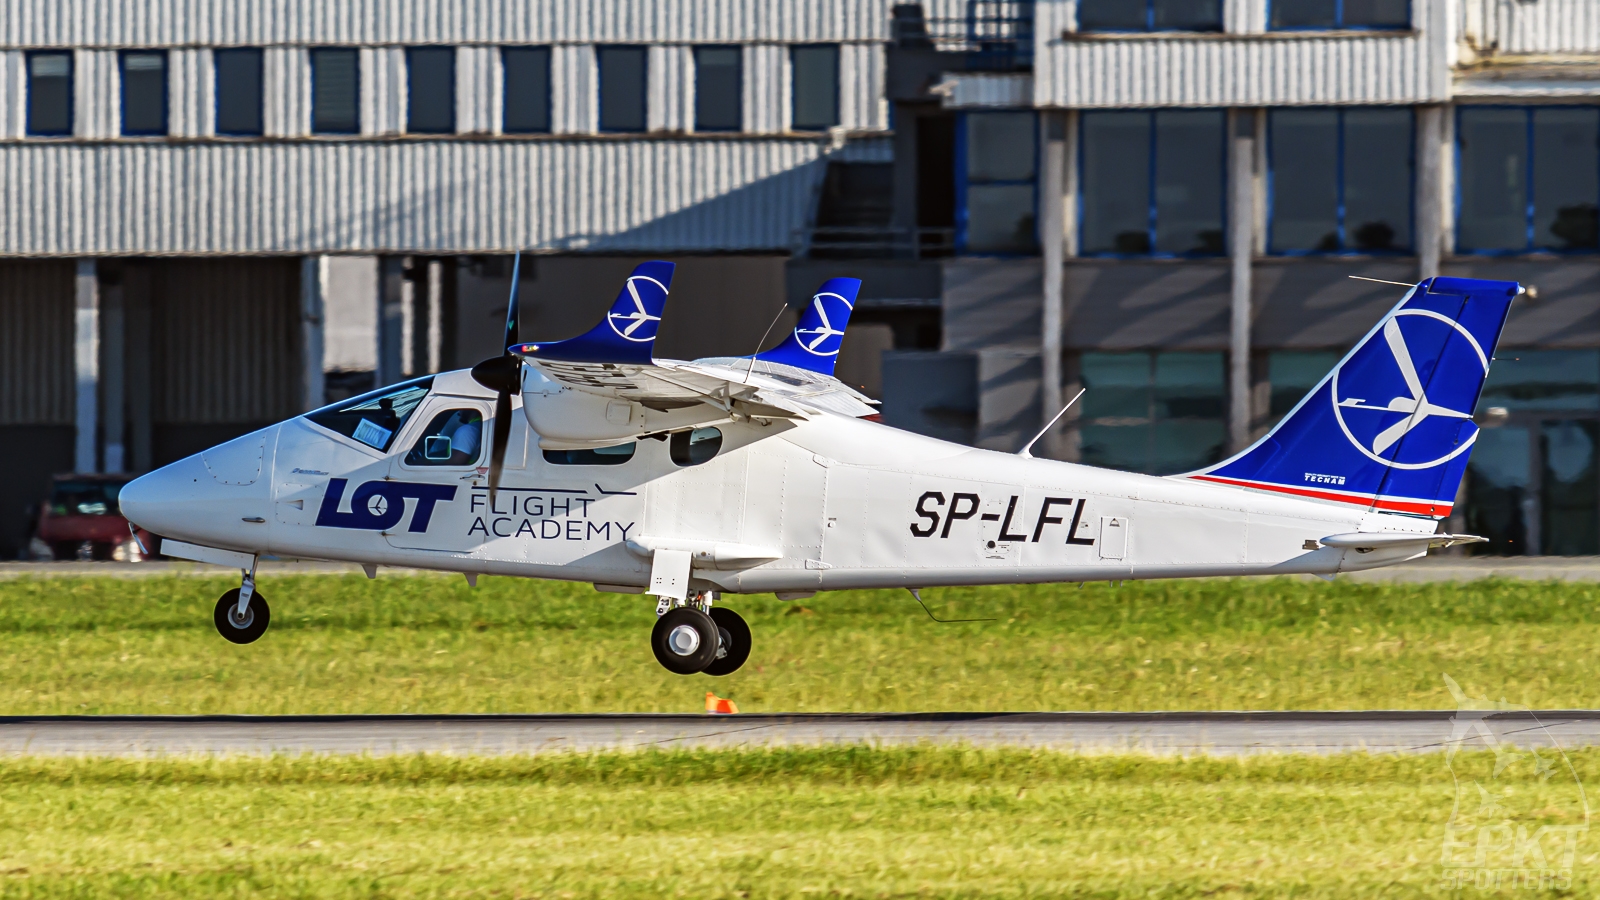 SP-LFL - Tecnam P2006 T MkII (LOT FLIGHT ACADEMY) / Pyrzowice - Katowice Poland [EPKT/KTW]